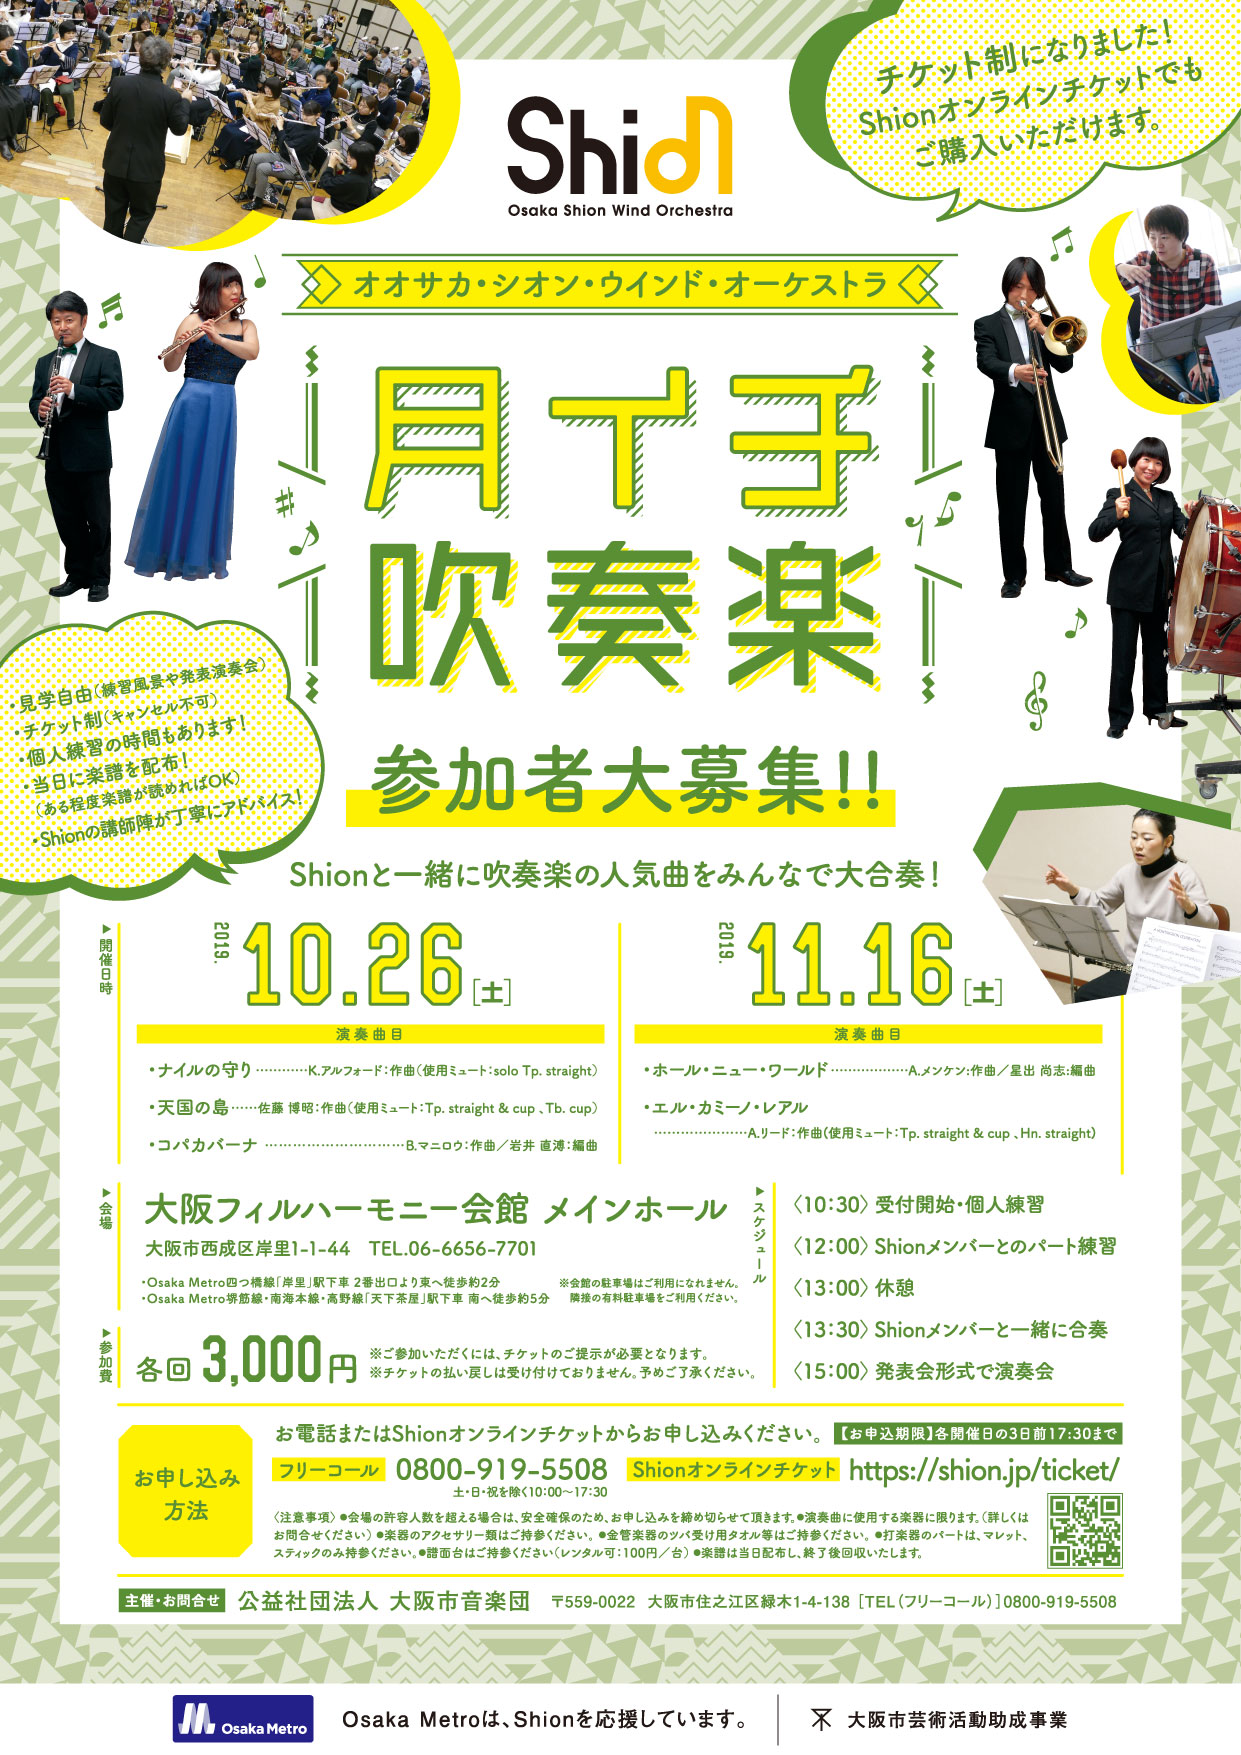 11月16日 土 月イチ吹奏楽 コンサート情報 Osaka Shion Wind Orchestra 大阪市音楽団